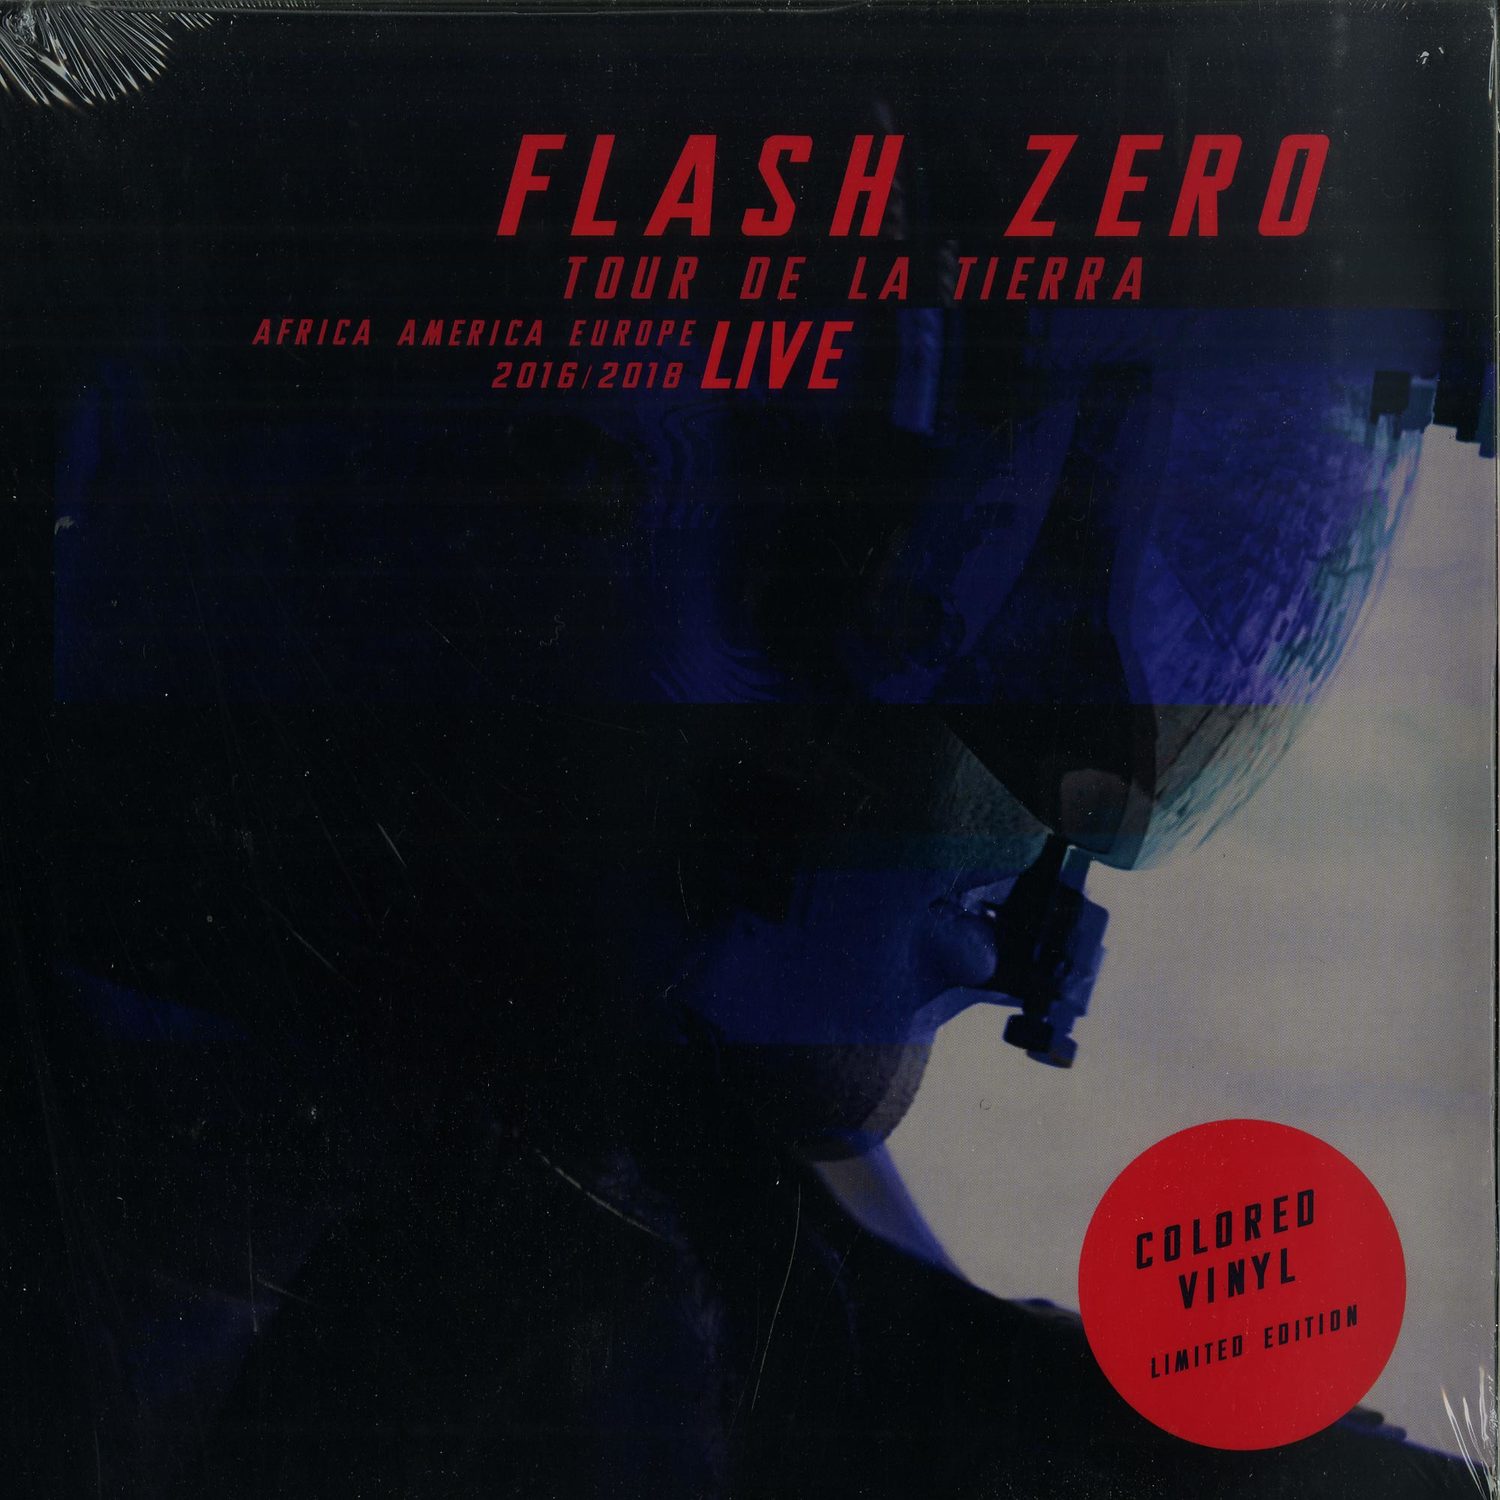 Flash Zero - TOUR DE LA TIERRA 